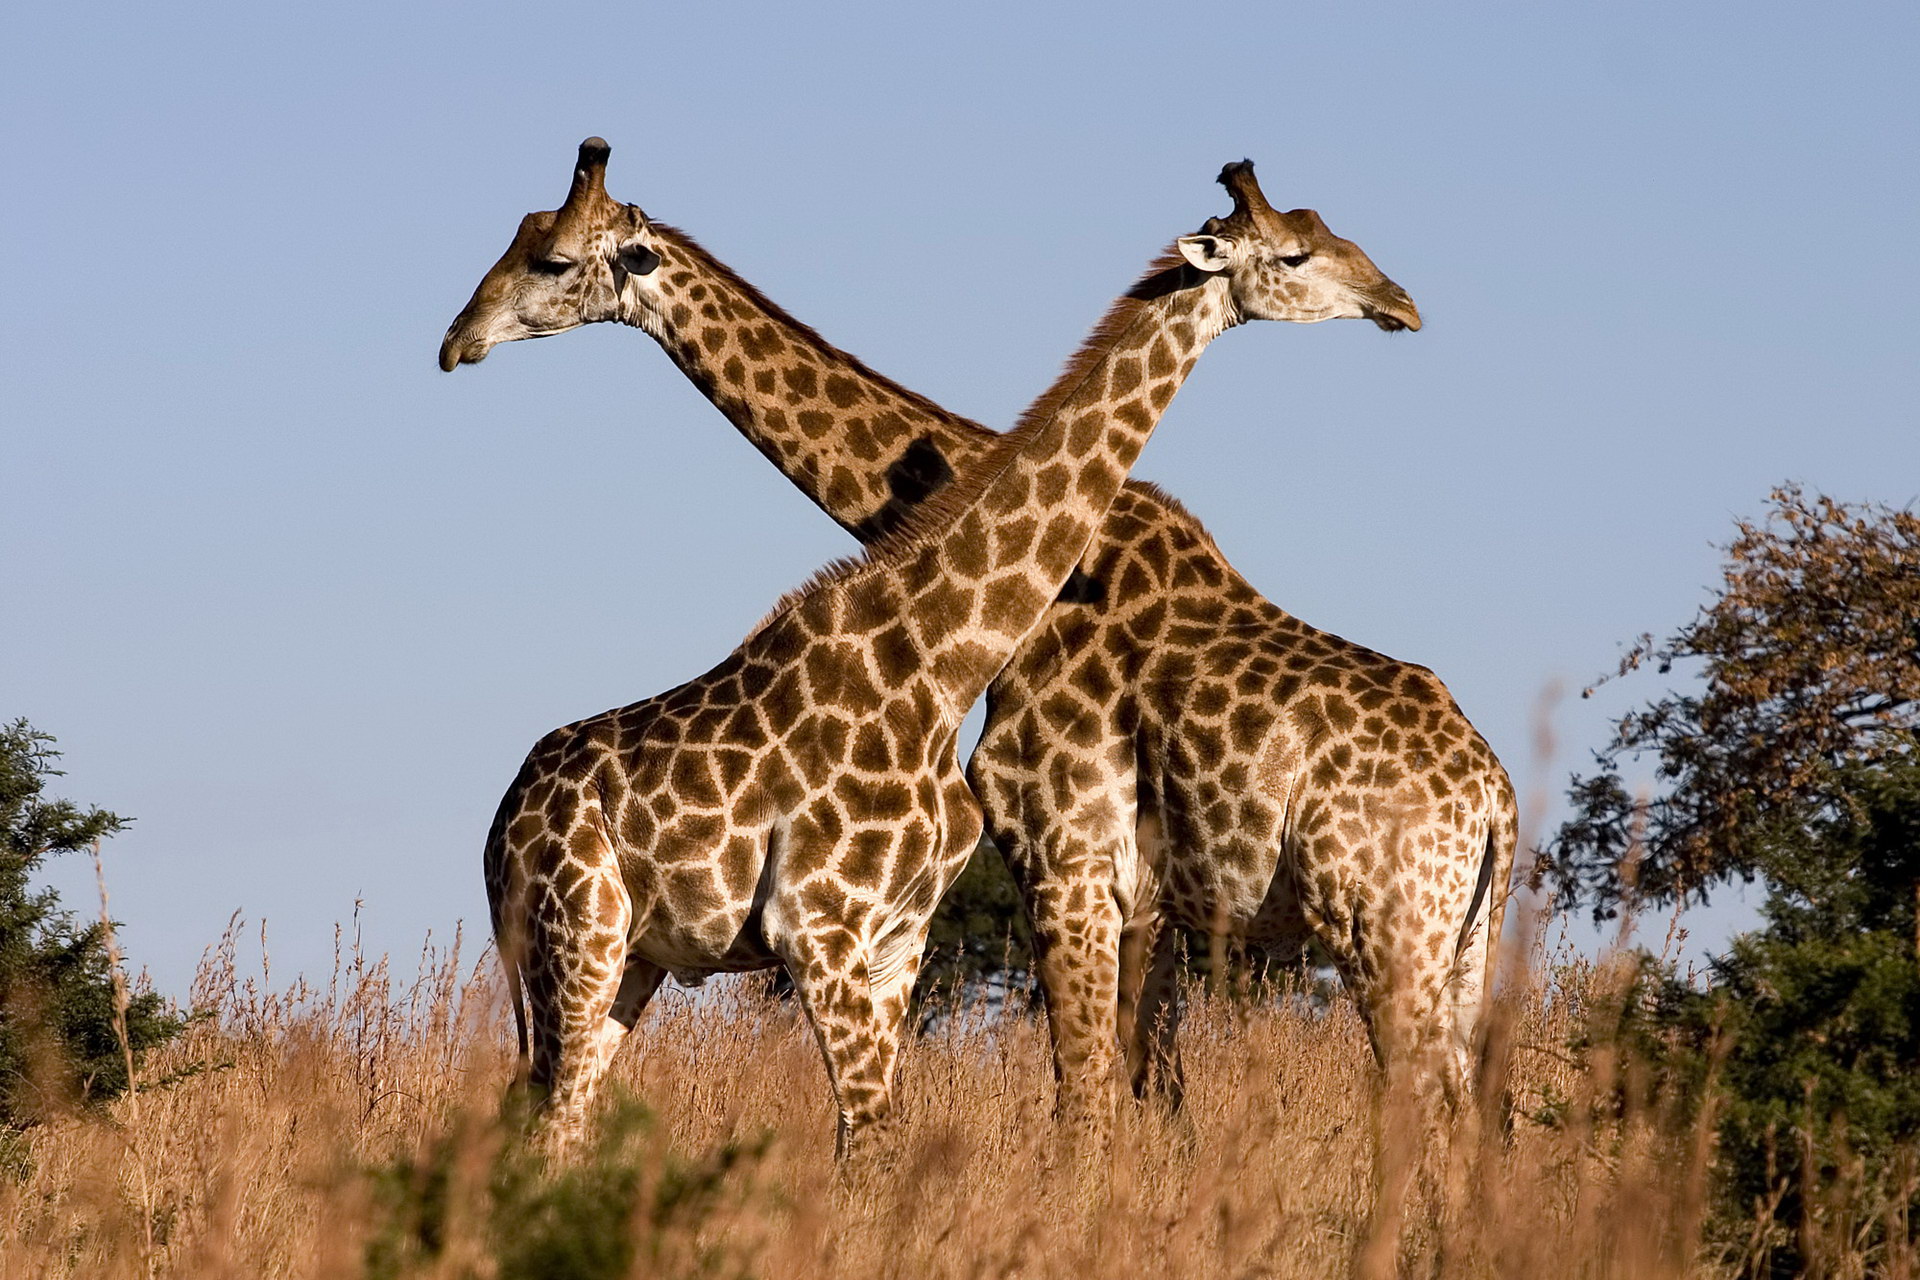 Awọn bata ti giraffes kan